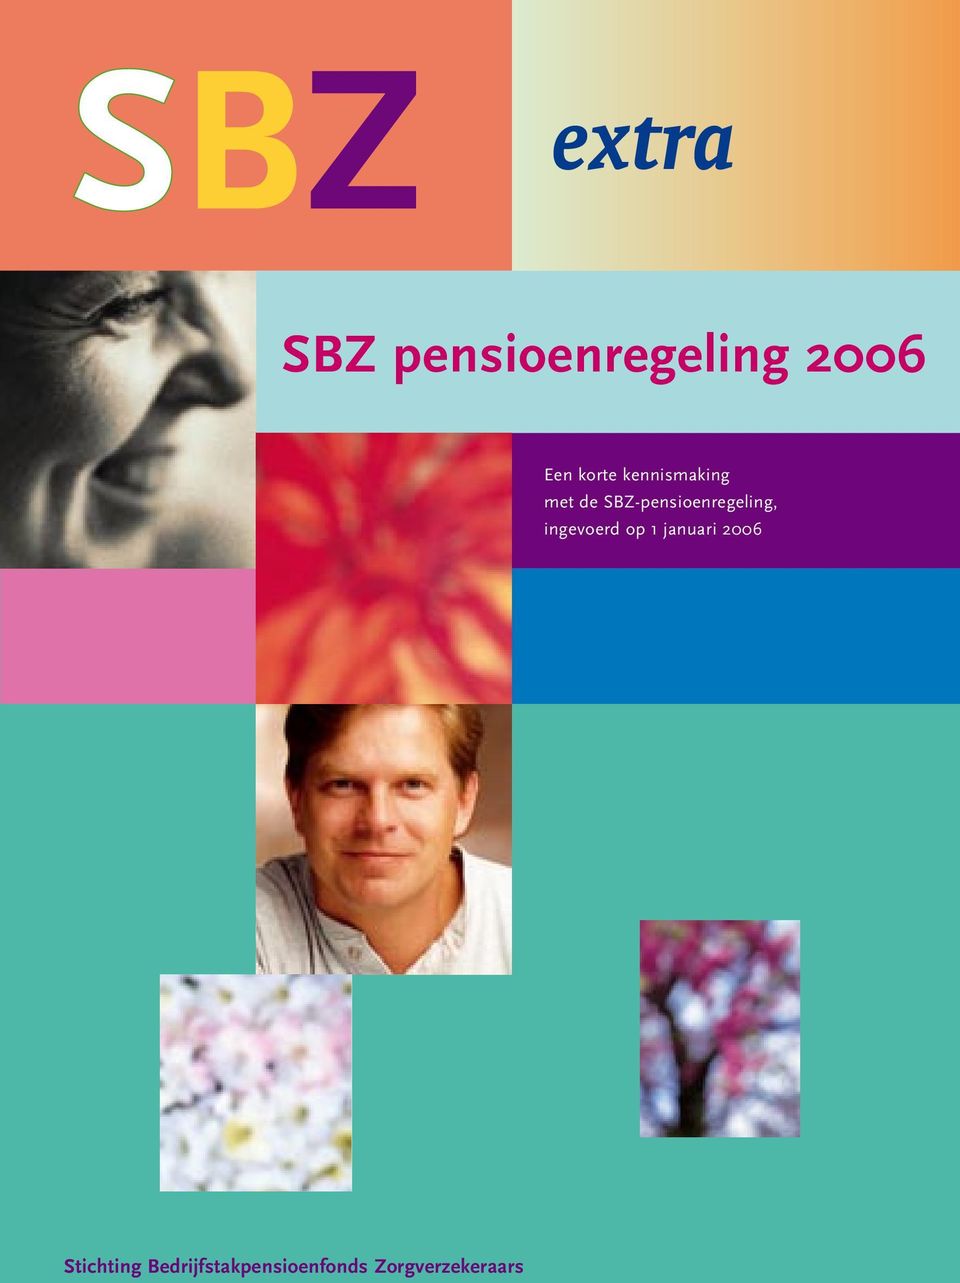 SBZ-pensioenregeling, ingevoerd op 1